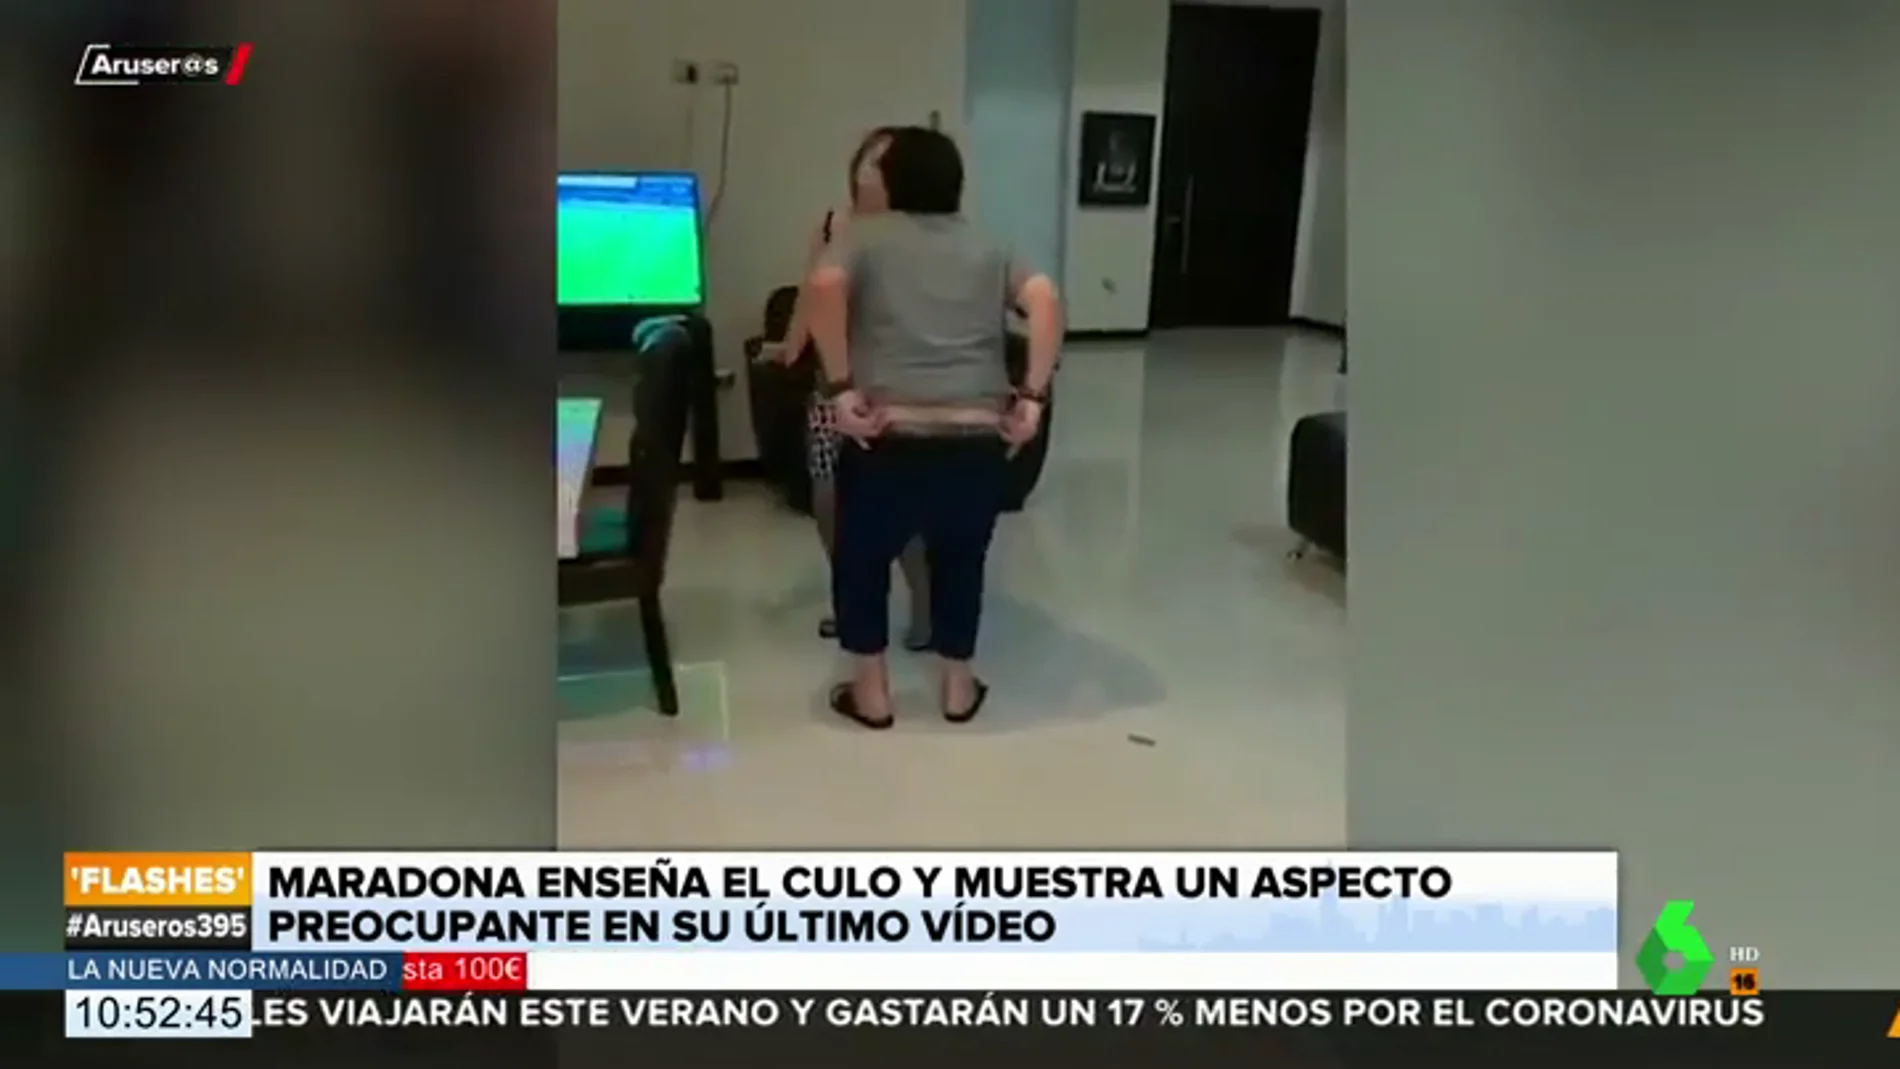 Maradona se baja los pantalones en un vídeo y hace un 'calvo' mientras baila con dificultades